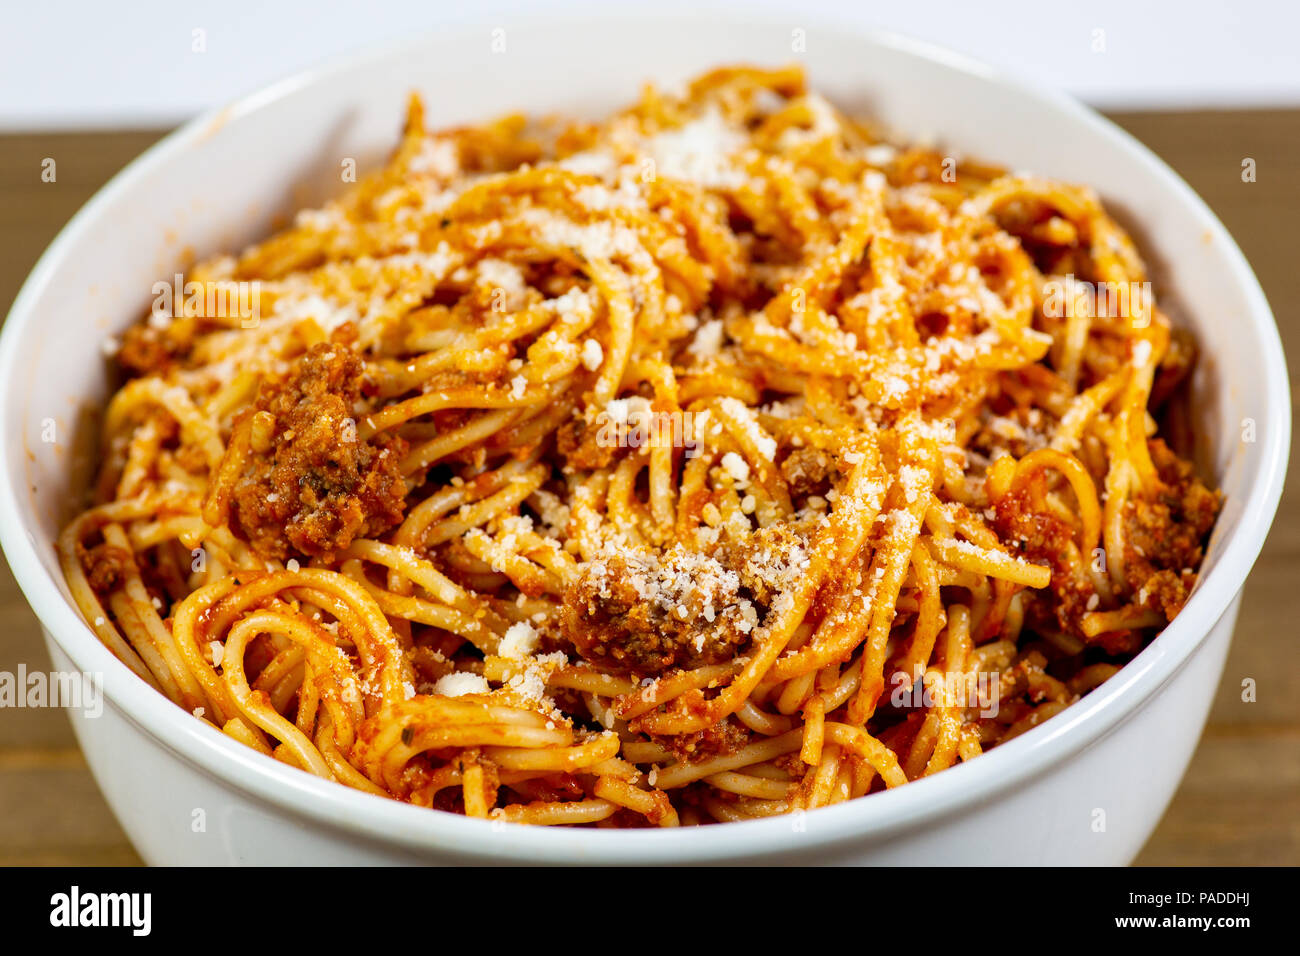 Los espaguetis a la Boloñesa en una cubeta blanca profunda sobre la mesa de la cocina de madera esperando ser comido Foto de stock